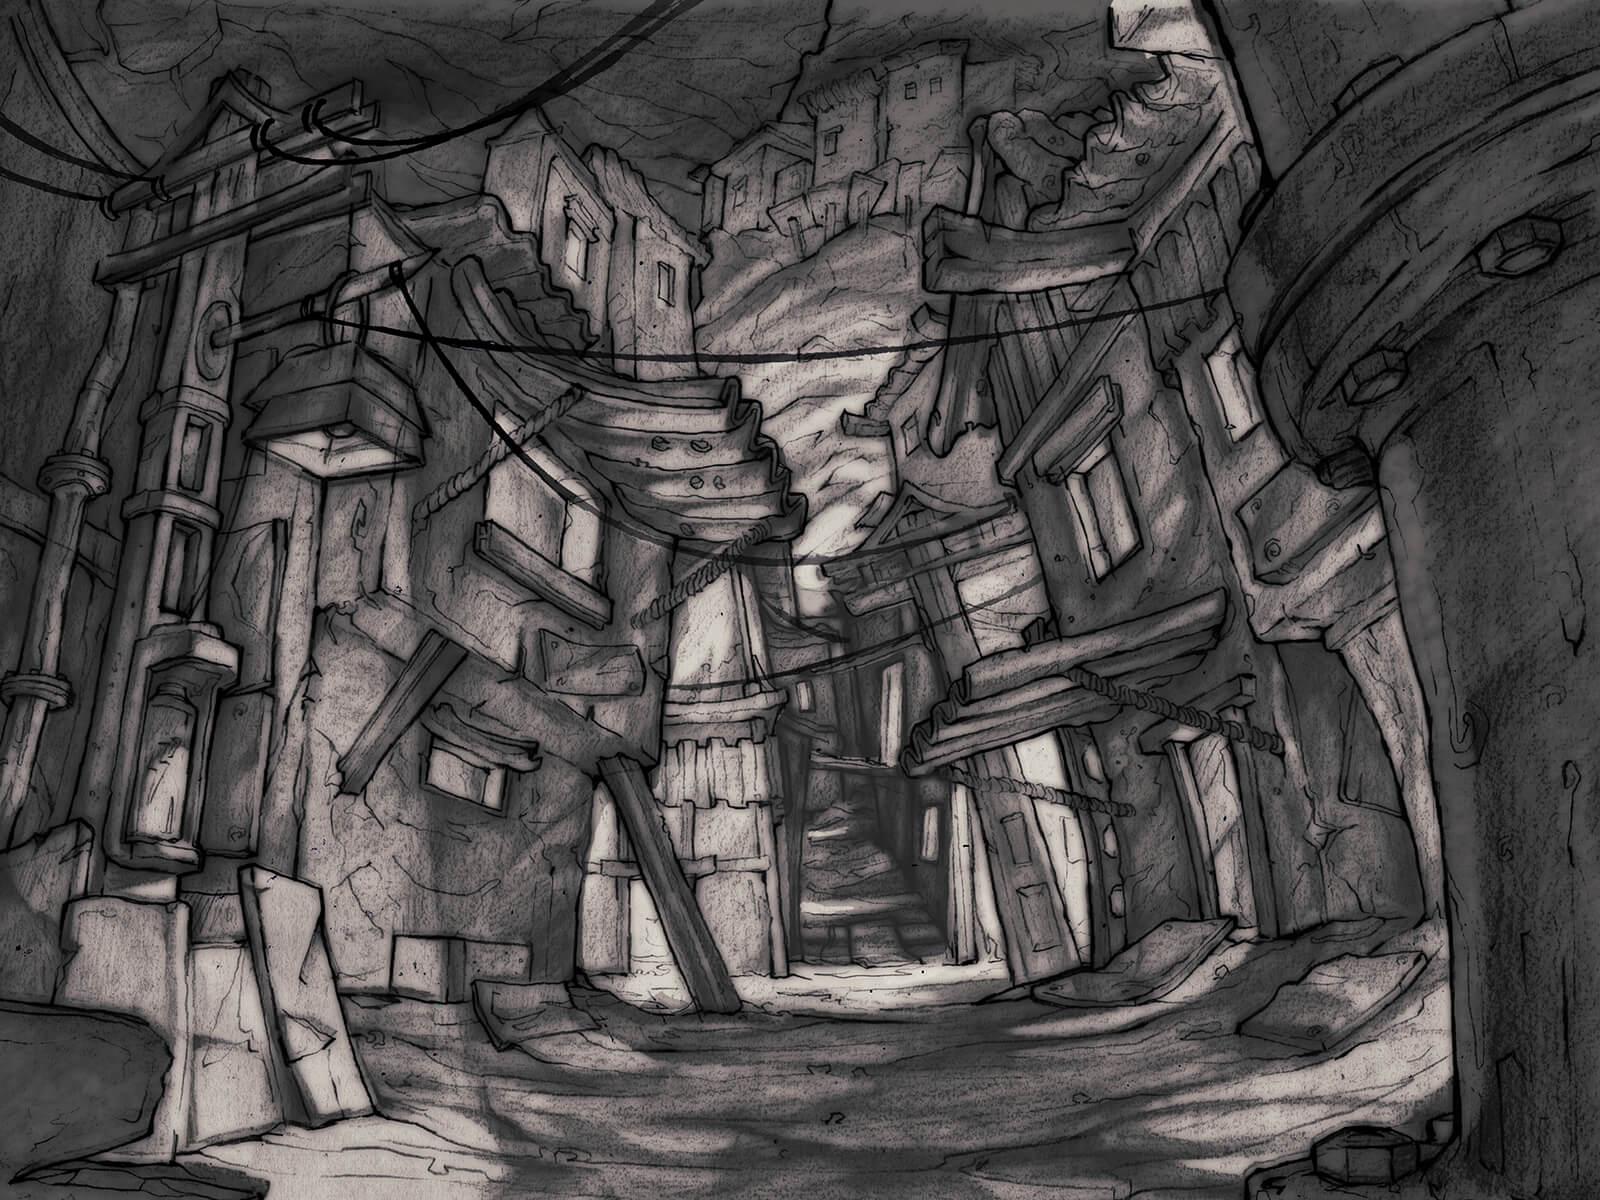 Dibujo en blanco y negro de un callejón estrecho y con poca luz a través de un paisaje urbano en ruinas construido bajo tierra.